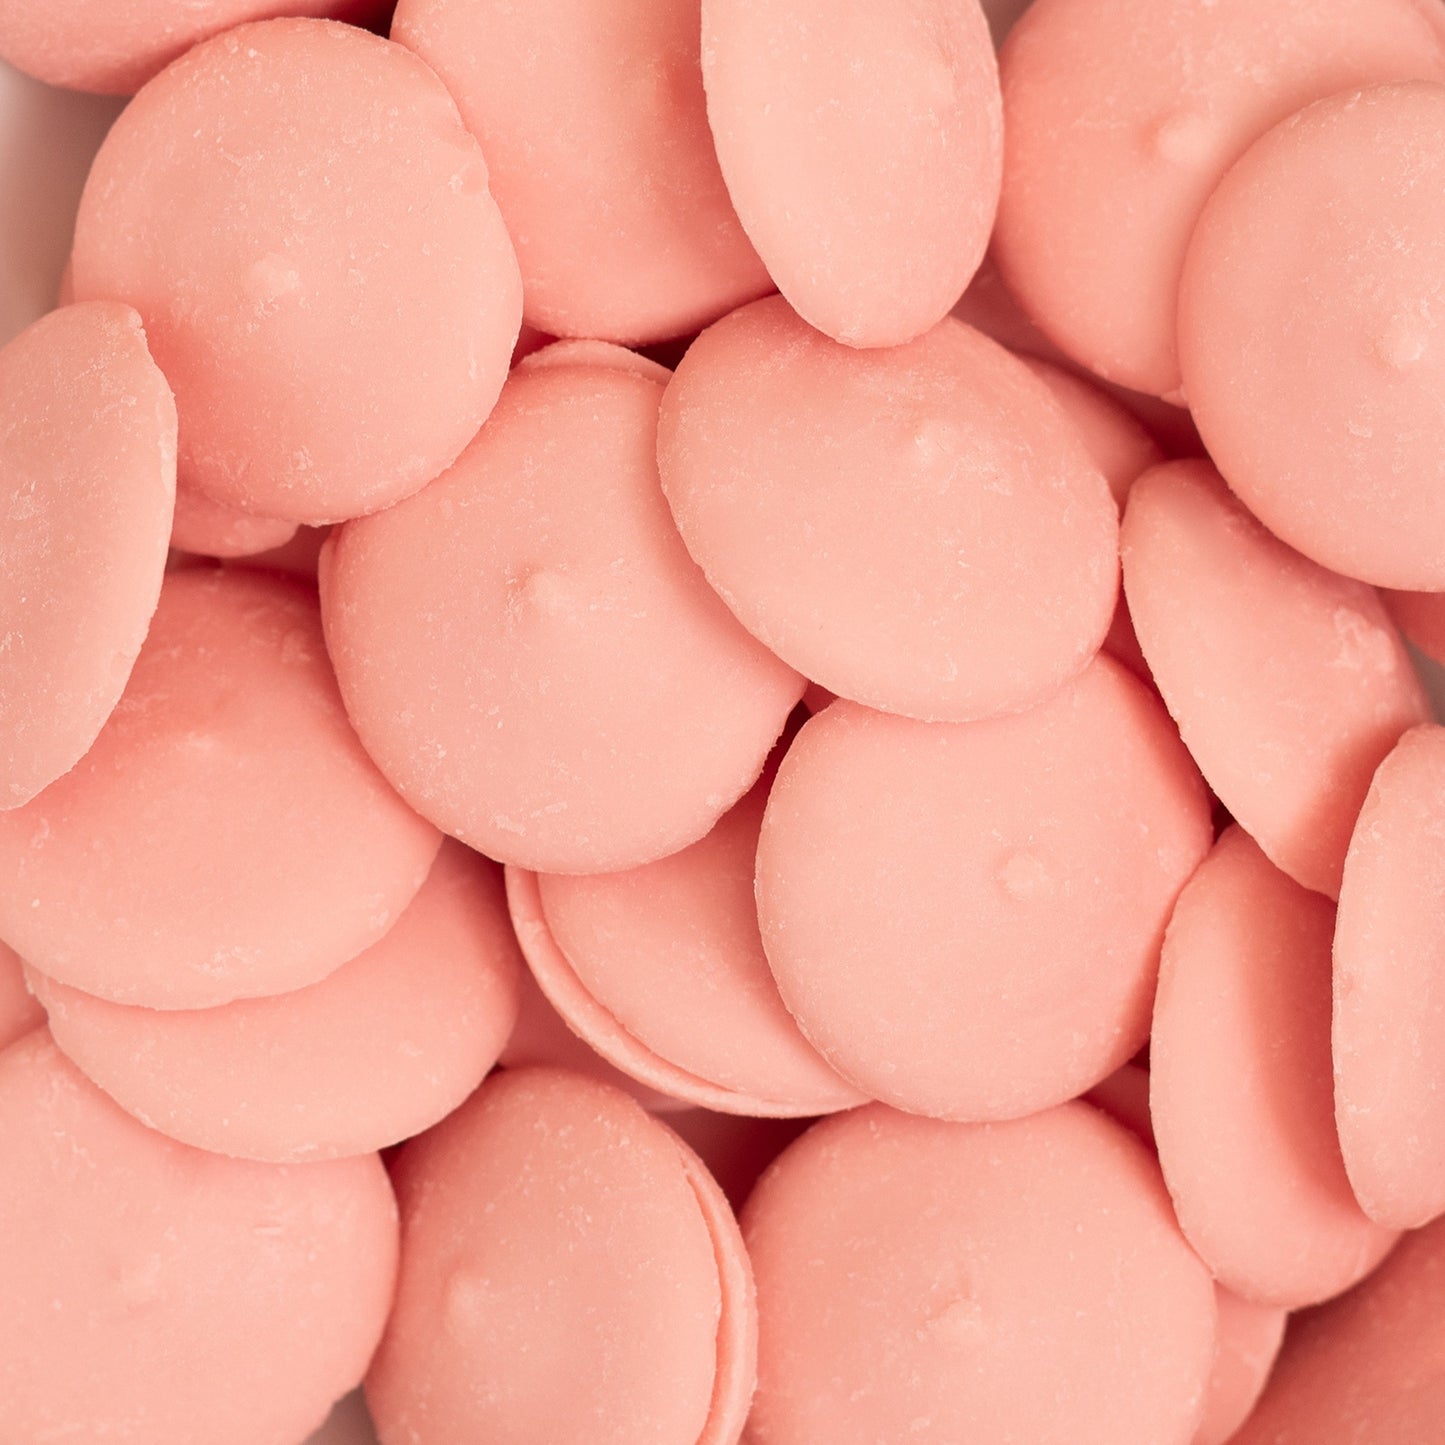 Sweetshop Melt'ems 12oz-Pink – American Crafts